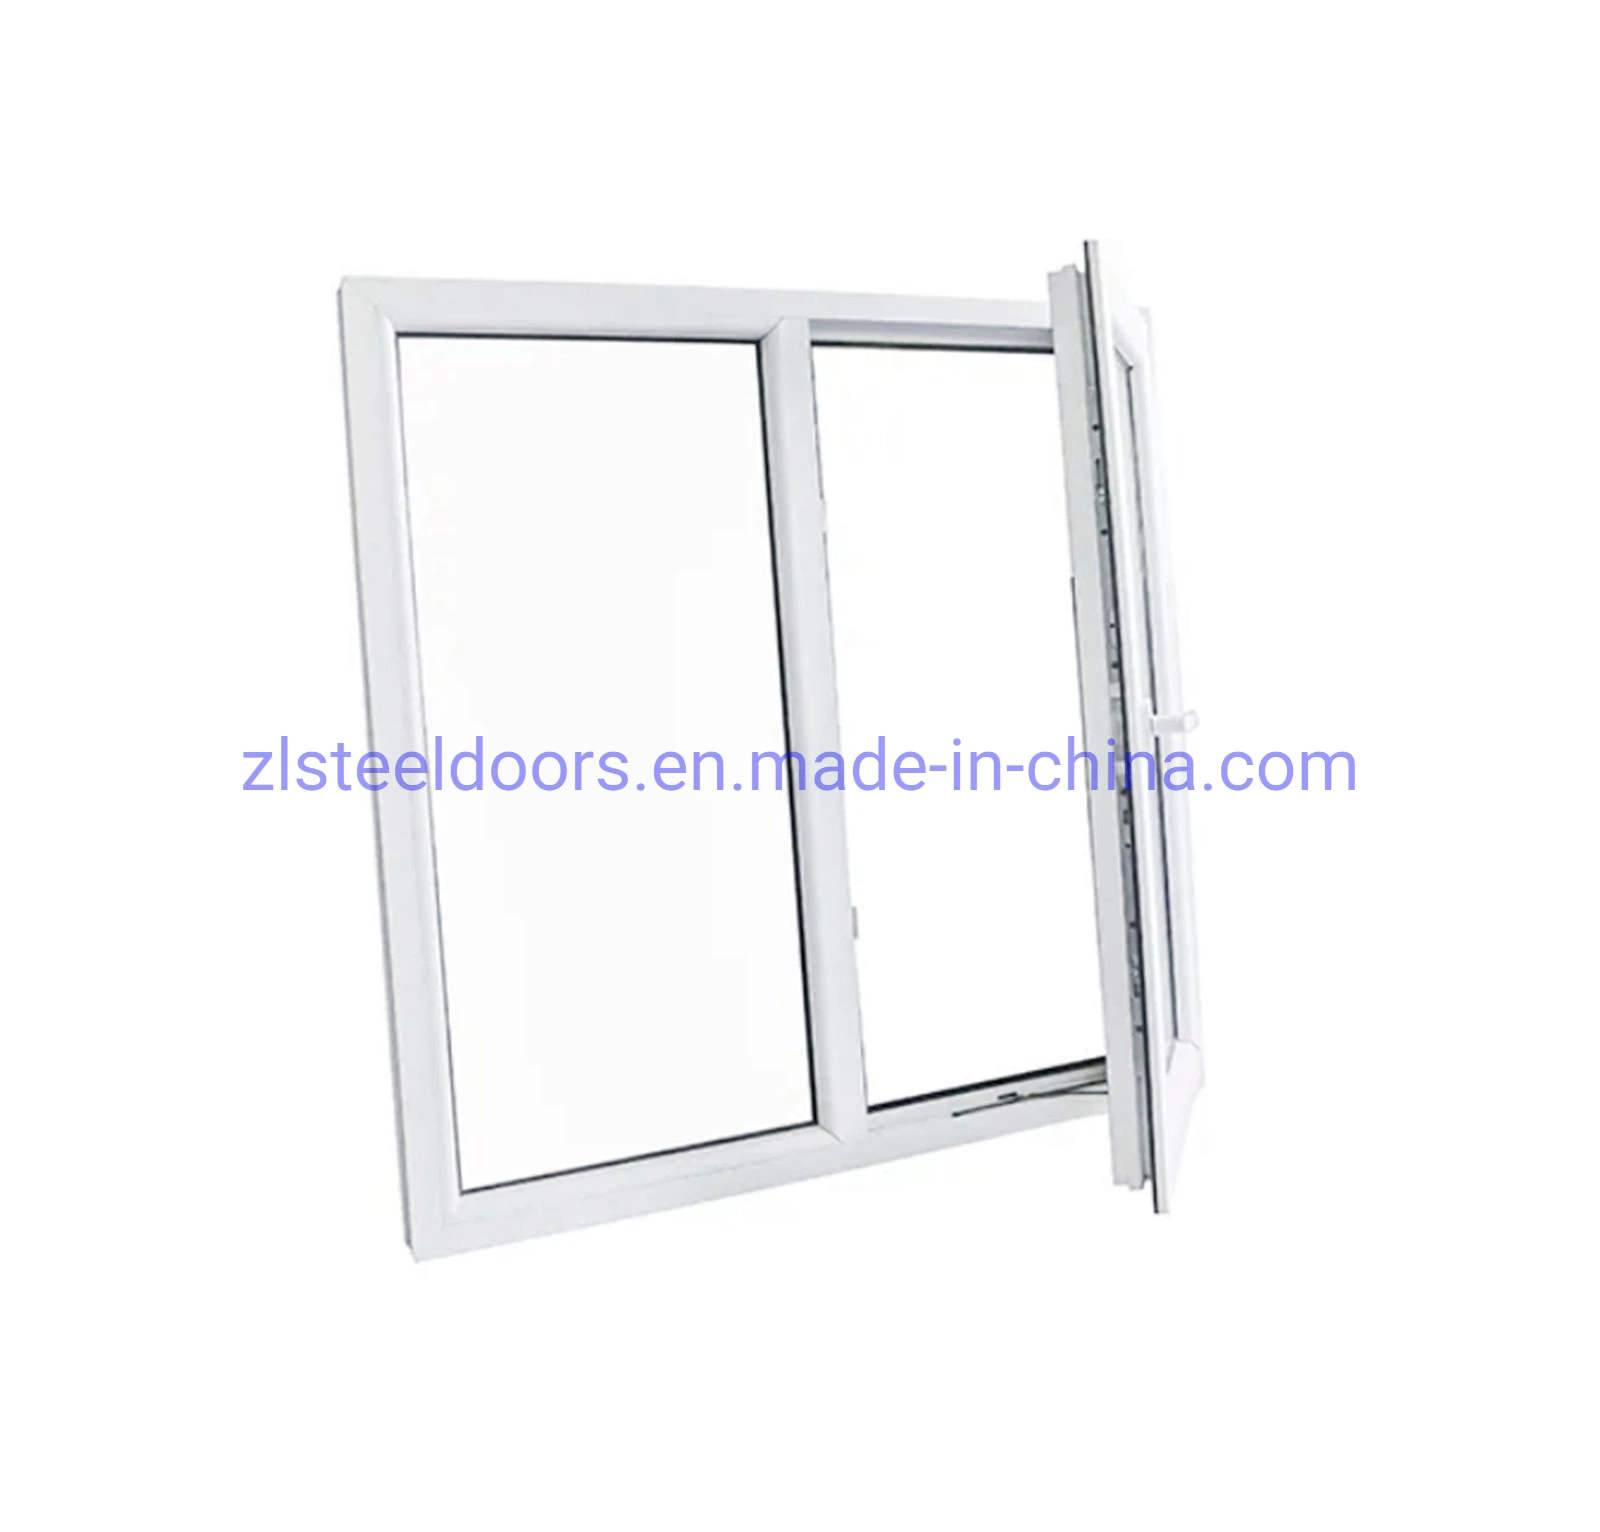 نوافذ منزلقة من PVC للمباني شباك شاشة للأبواب والنوافذ مصنعون مصنع